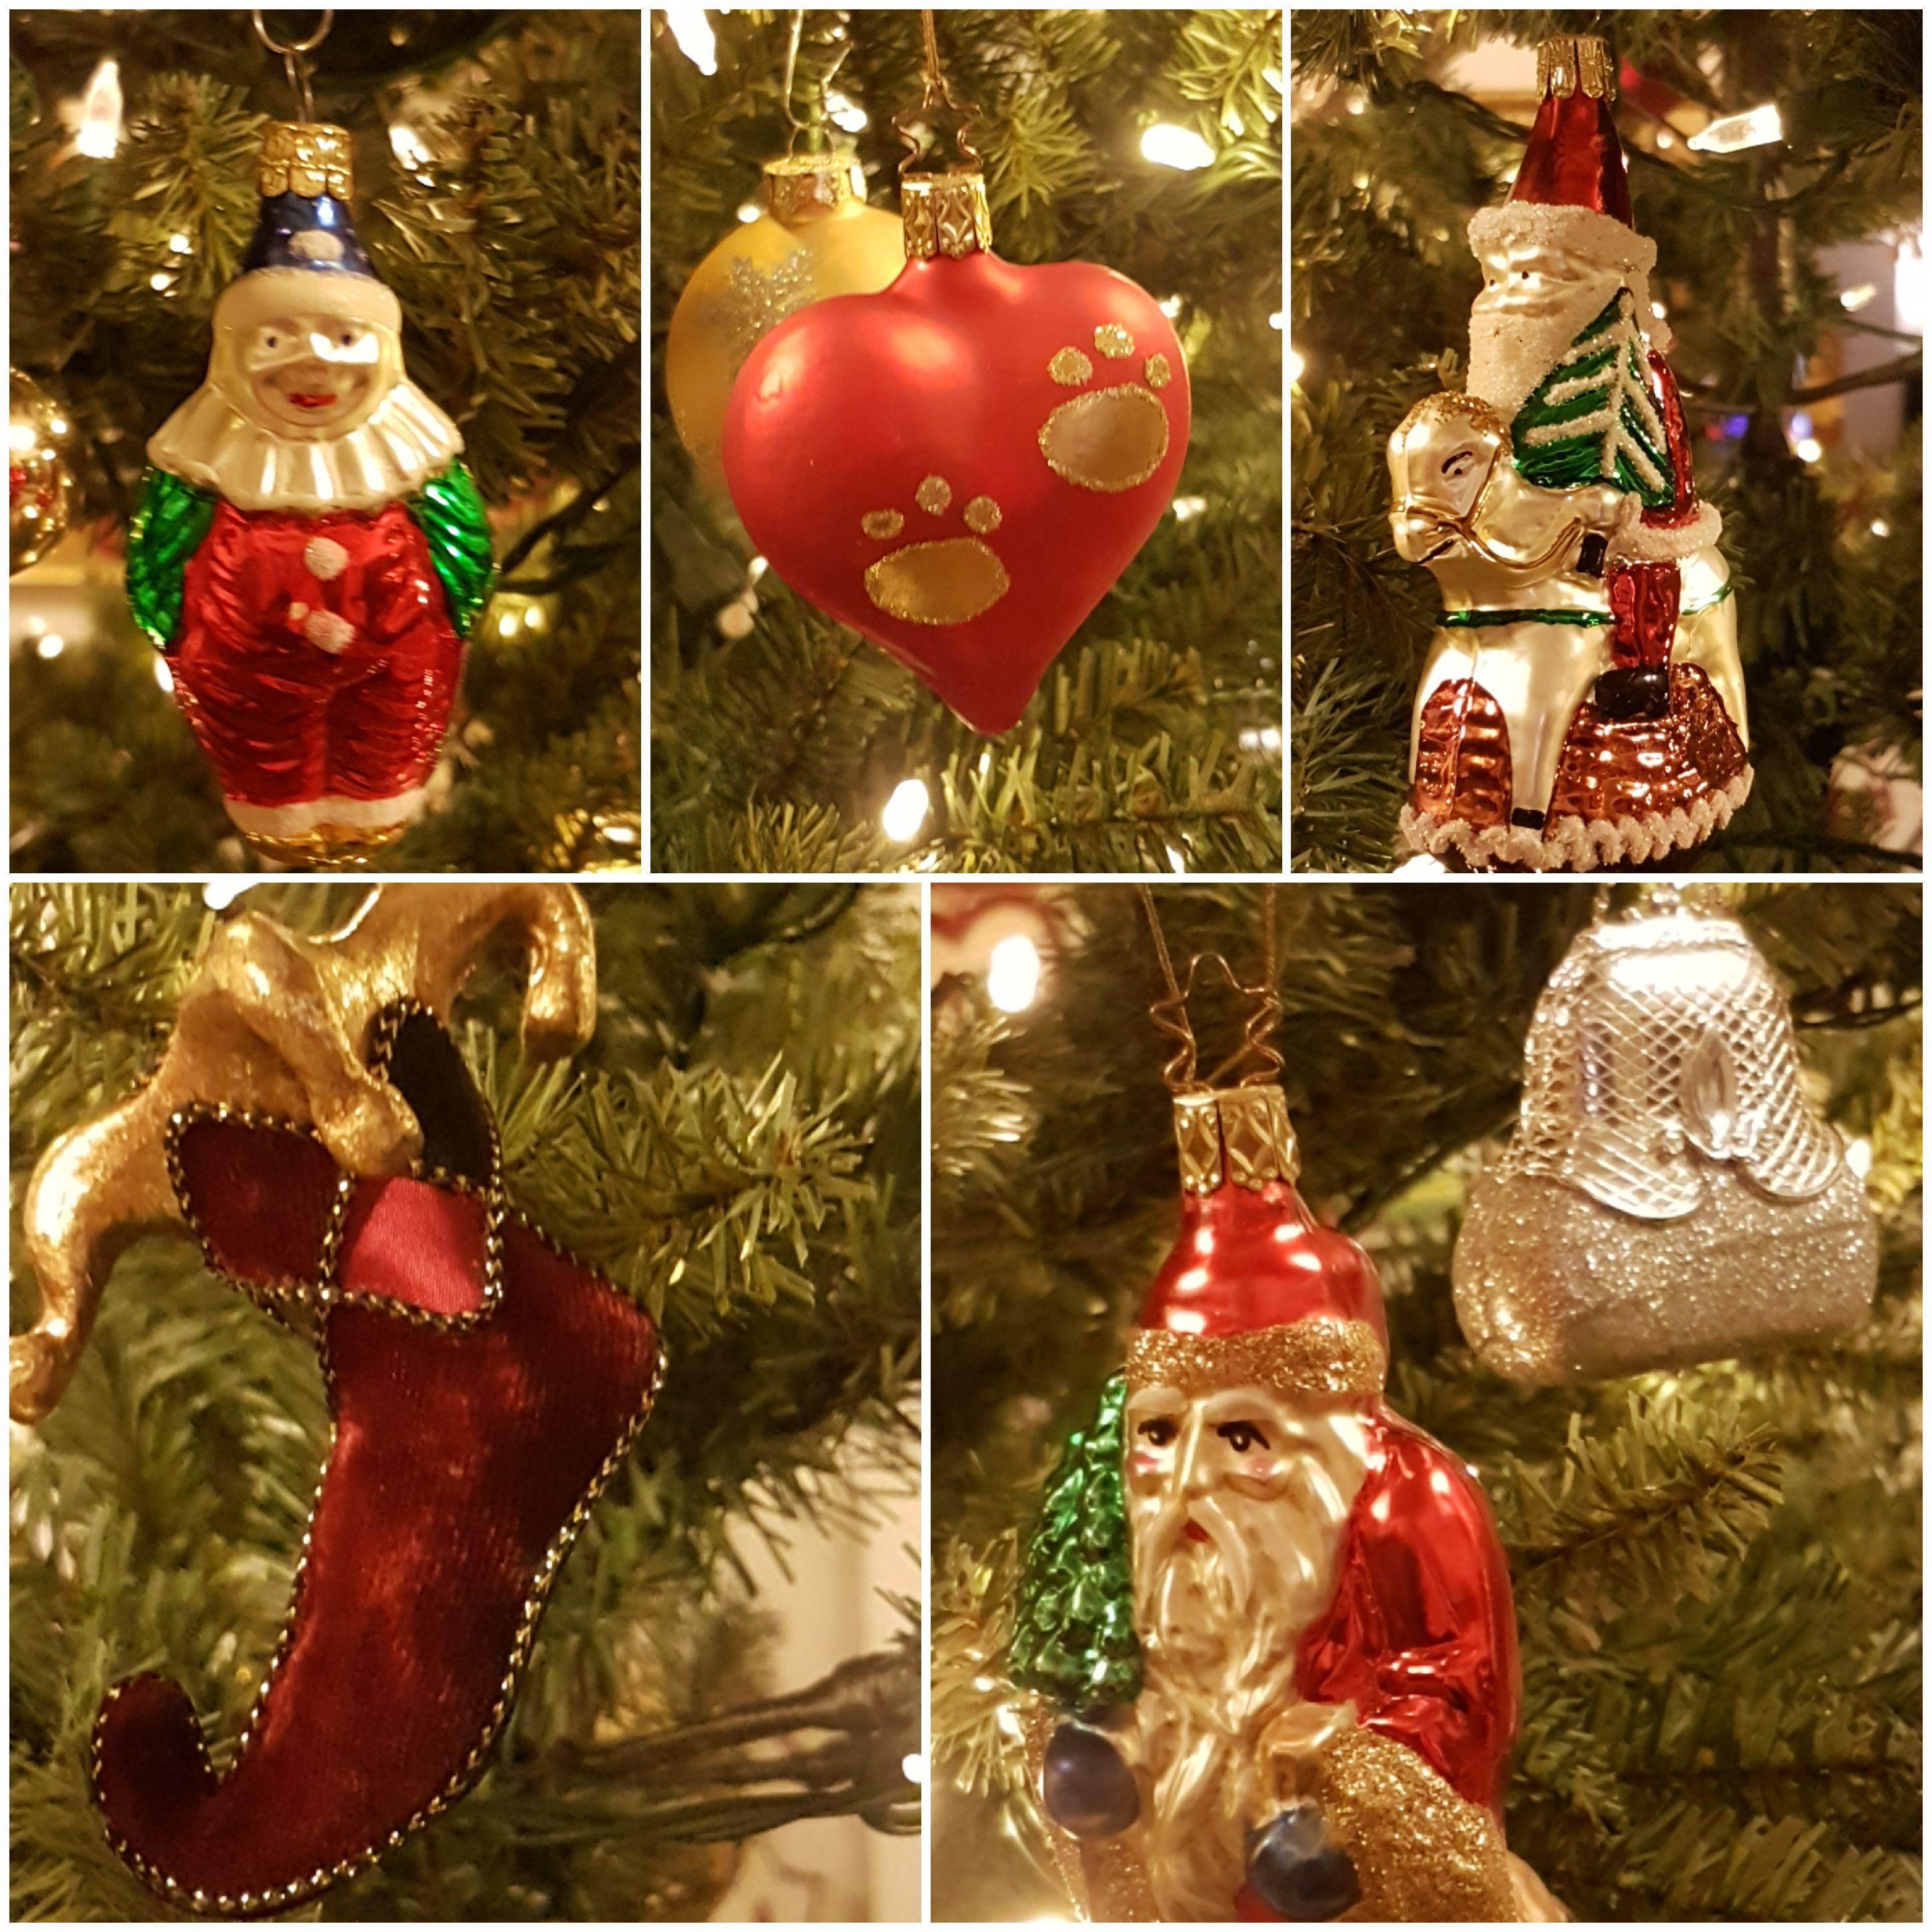 #Weihnachtsbaumschmuck #Weihnachten #Advent #Christmas